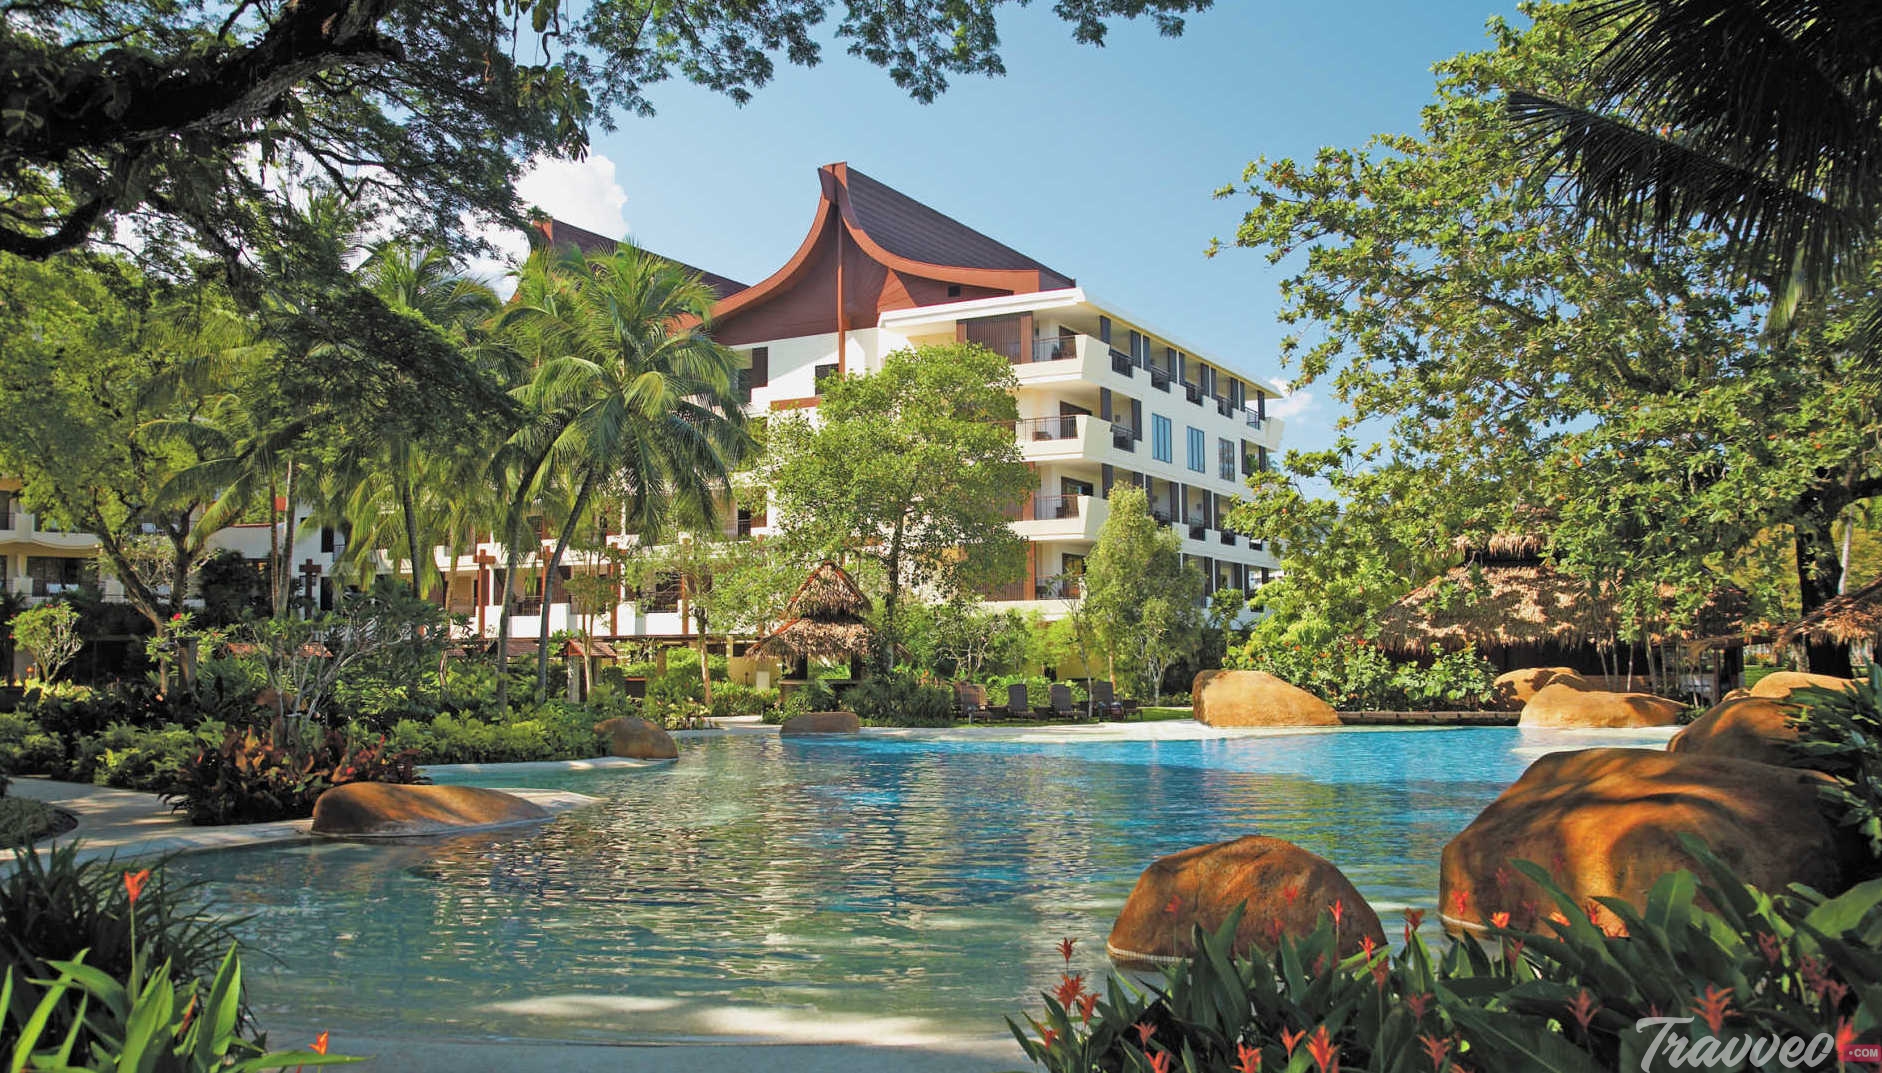 Shangri-La's Rasa Saang Resort & Spa